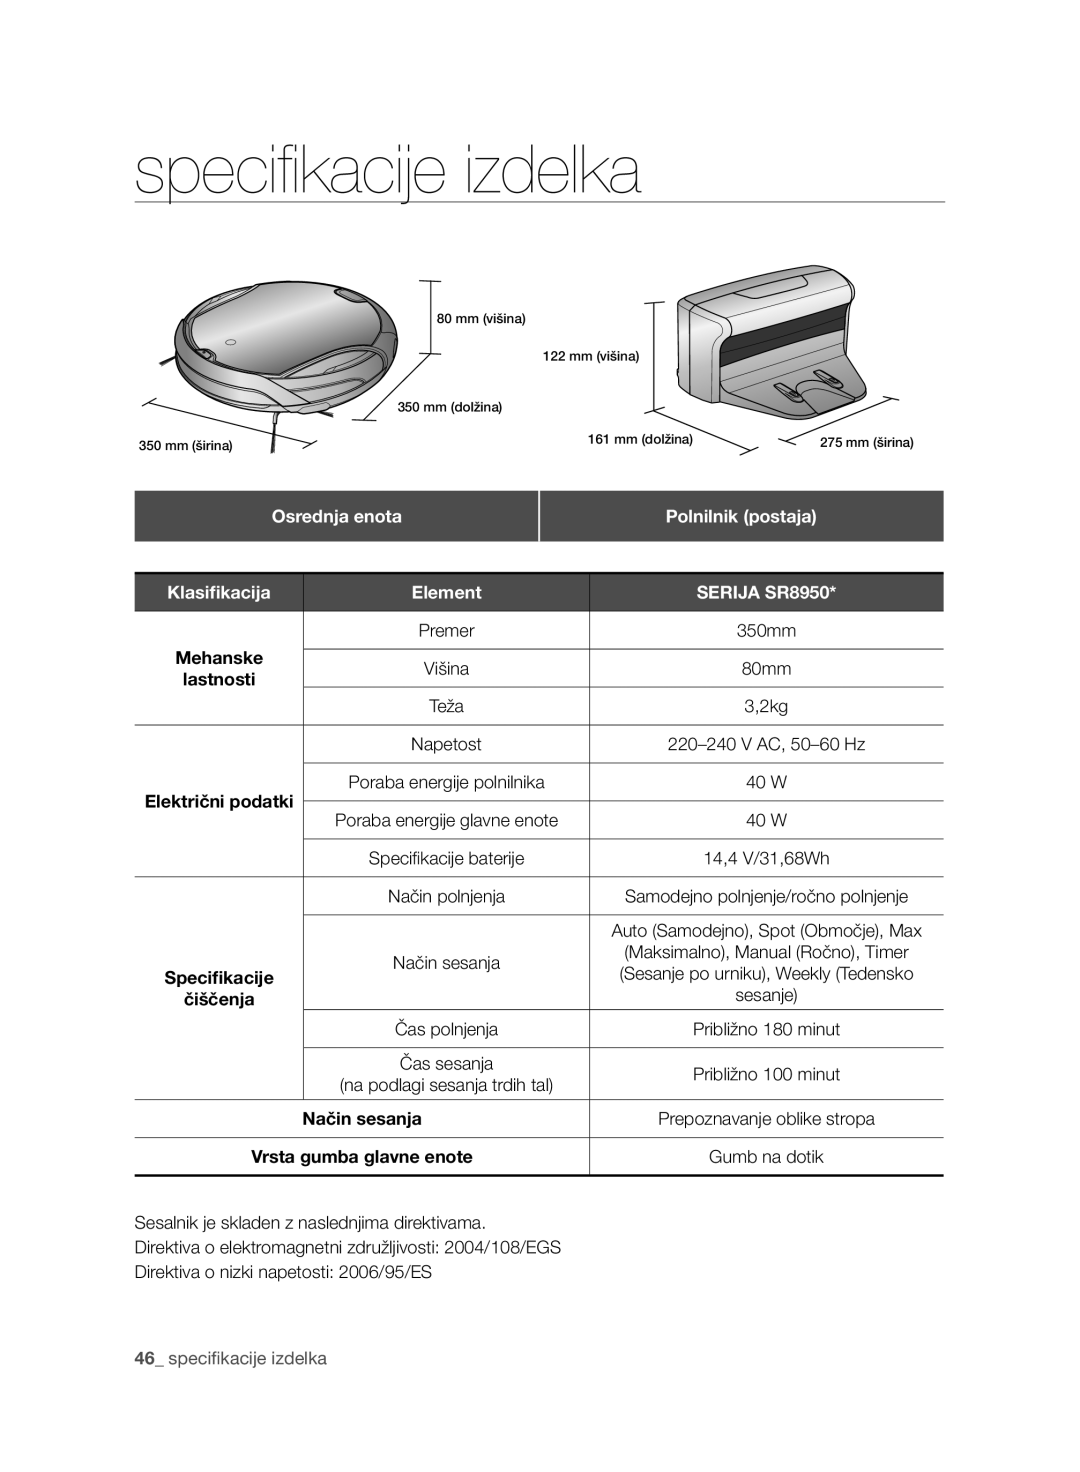 Samsung VCR8950L3B/XEO speciﬁ kacije izdelka, Osrednja enota, Polnilnik postaja, Klasiﬁkacija, Element, SERIJA SR8950 